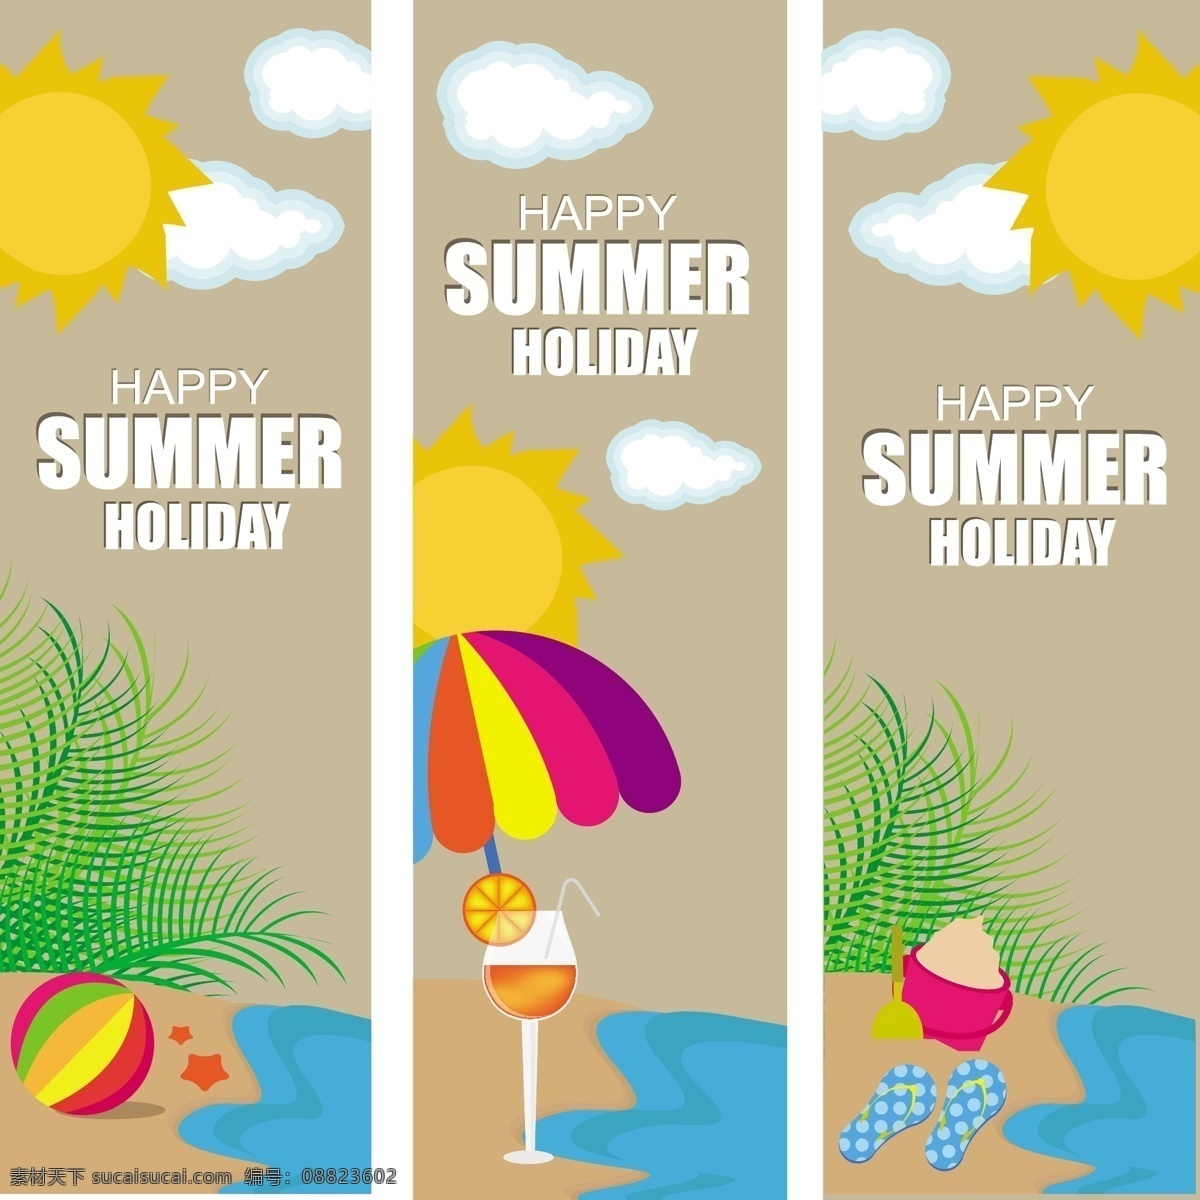 海边 沙滩 夏日 度假 椰树 矢量 沙子 太阳 云朵 复古 创意 涂鸦 英文 小清新 卡通 填充 插画 背景 海报 广告 包装 印刷